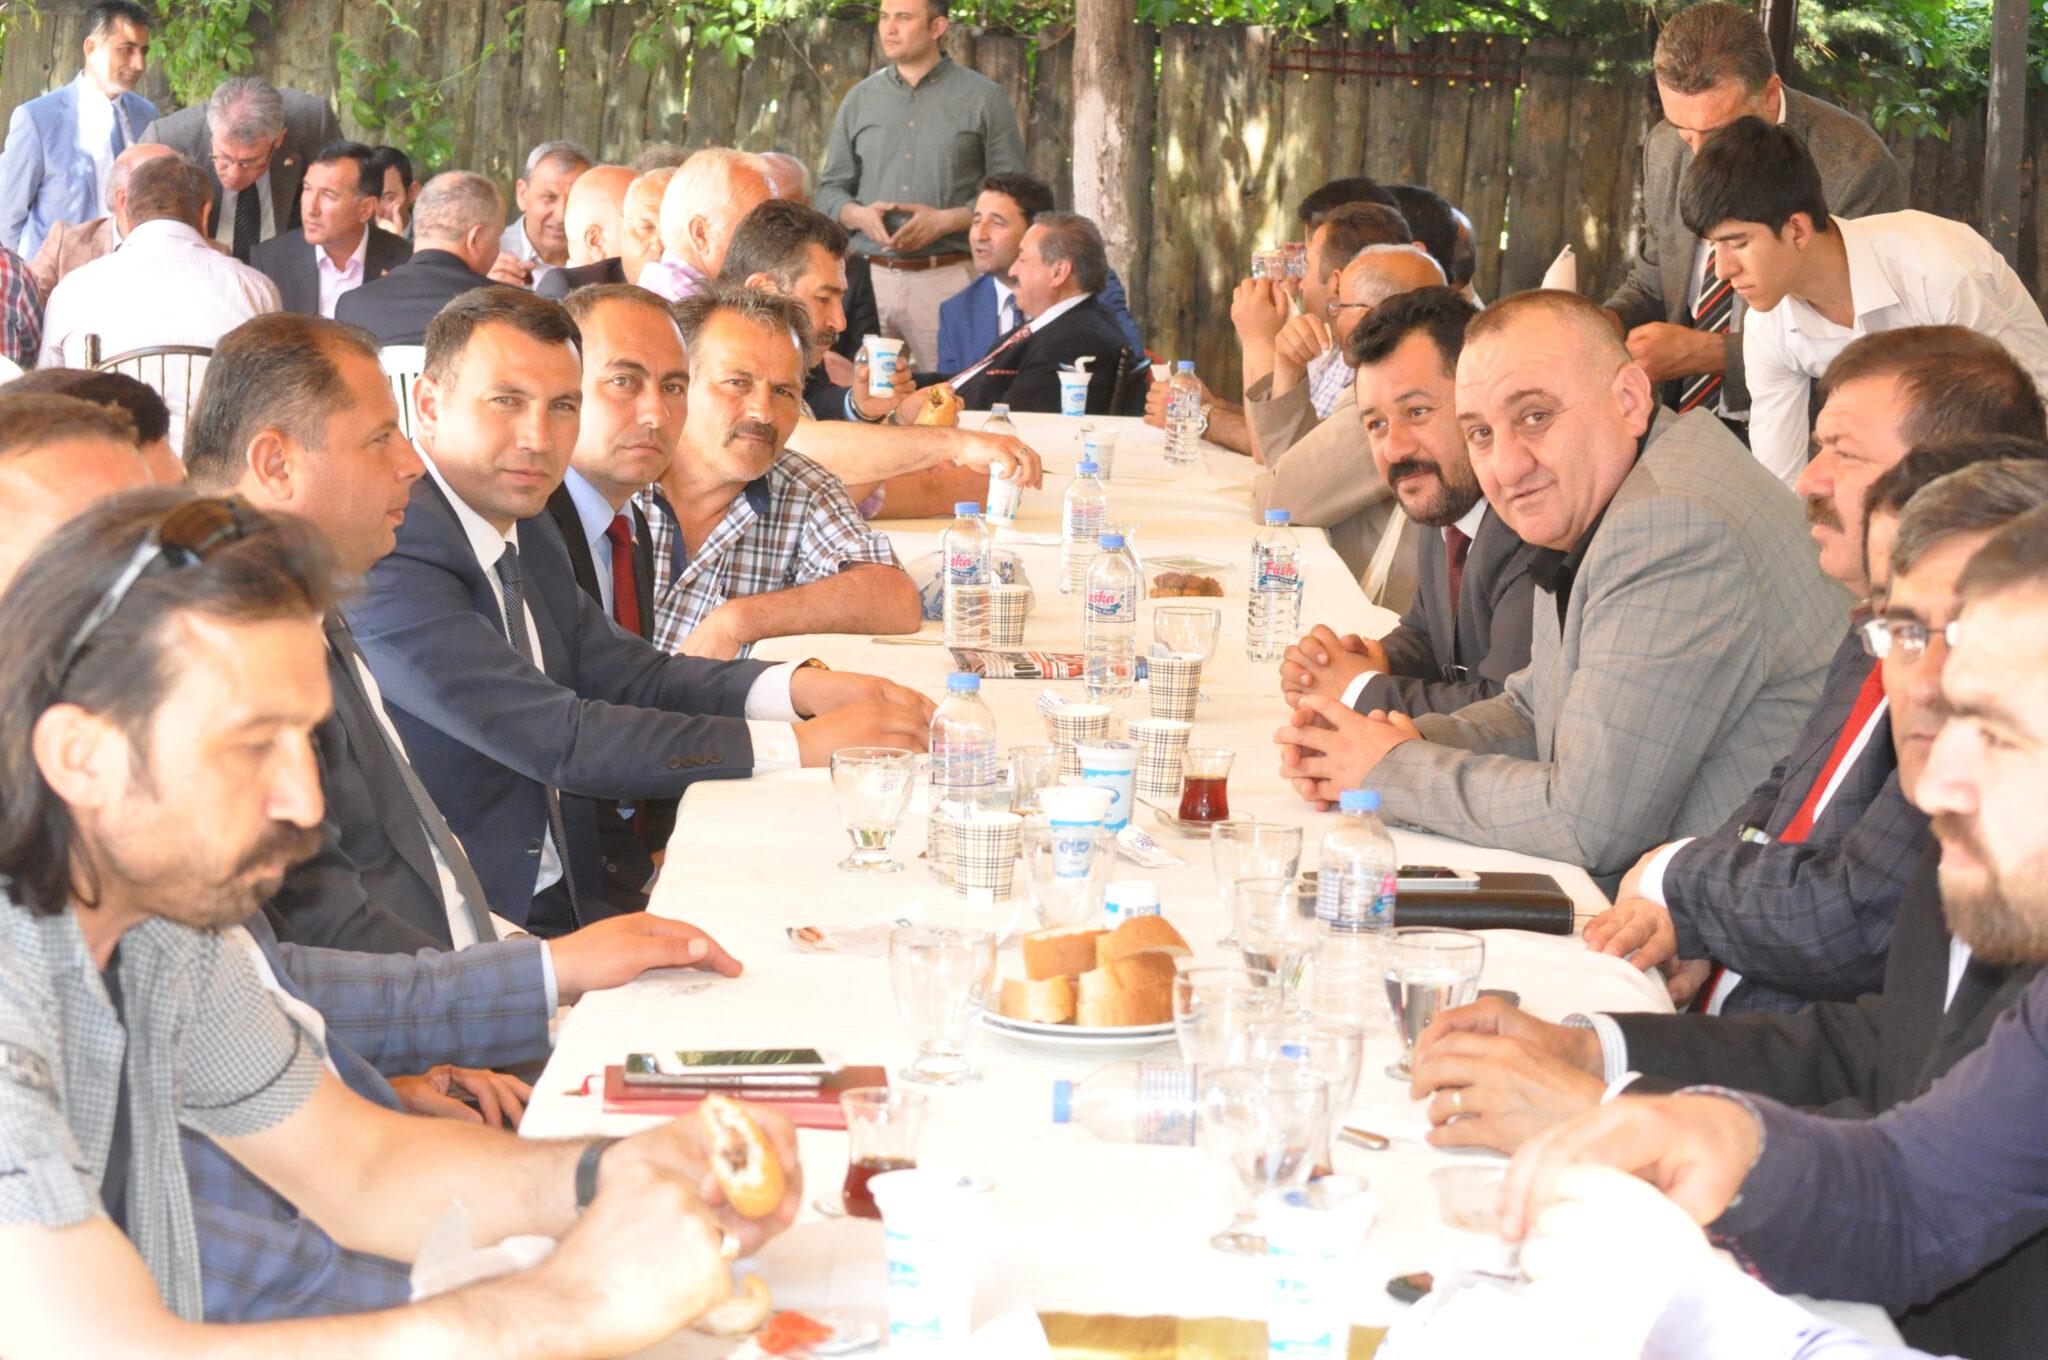 MHP’li vekil adayları kermesi ziyaret etti - Kırıkkale Haber, Son Dakika Kırıkkale Haberleri